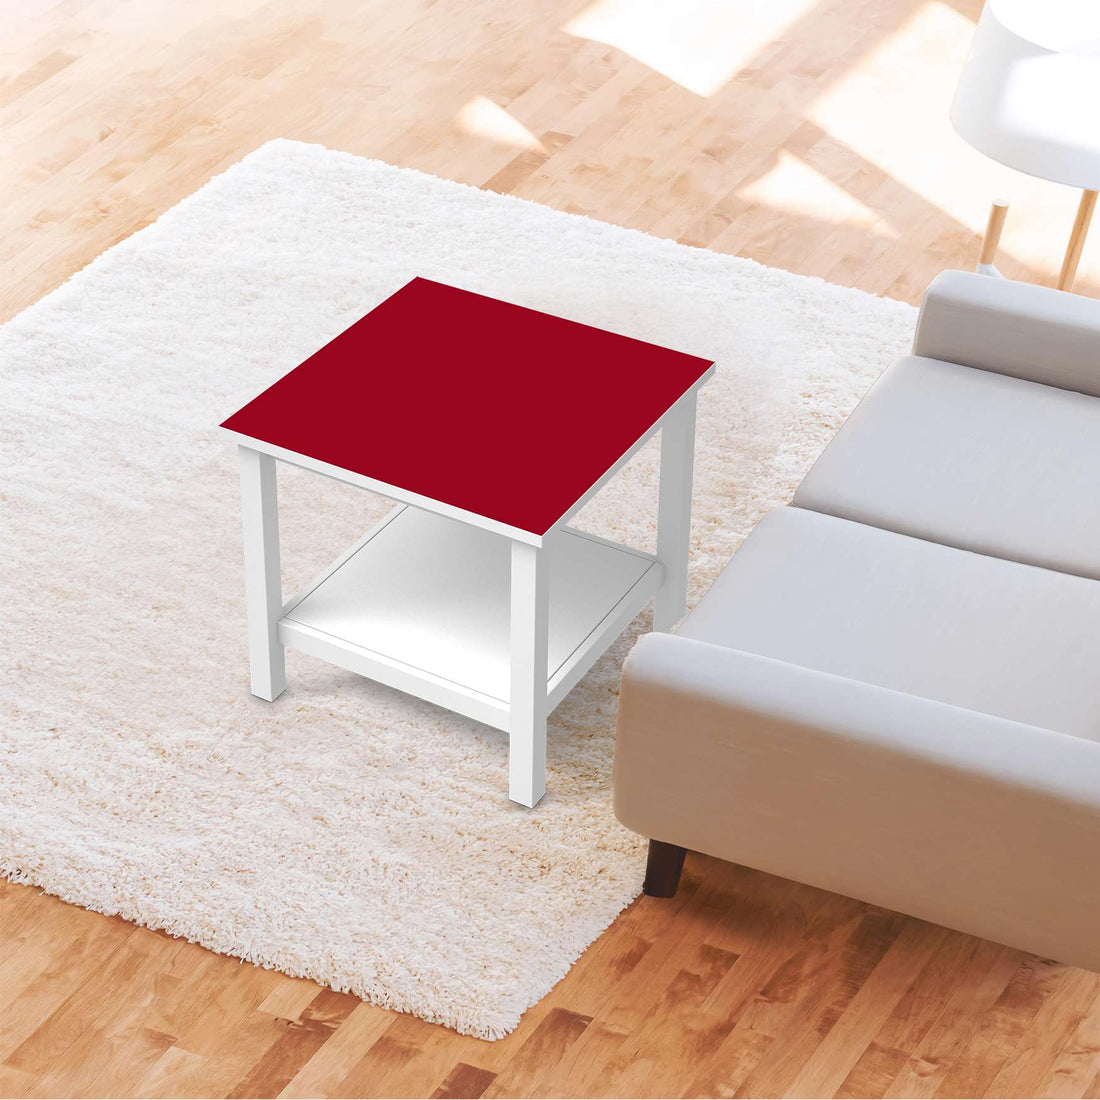 Möbel Klebefolie Rot Dark - IKEA Hemnes Beistelltisch 55x55 cm - Wohnzimmer